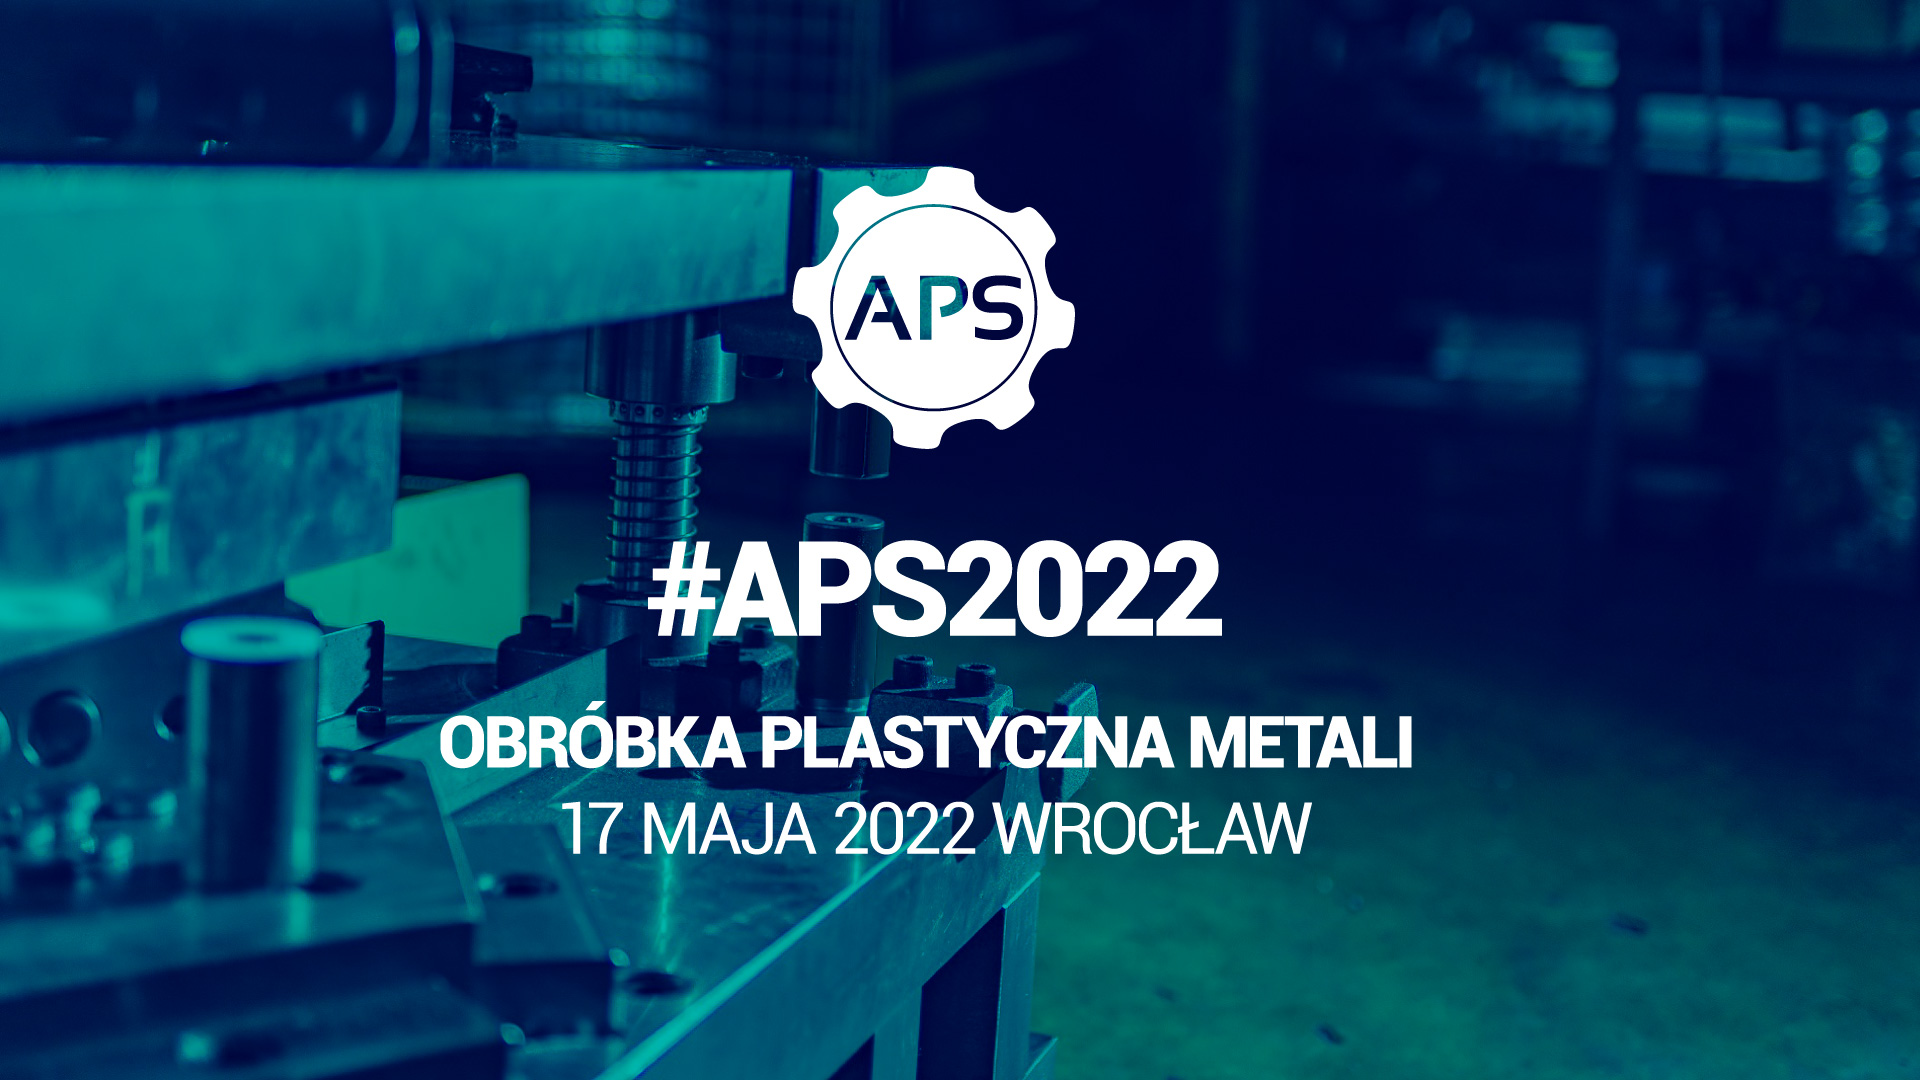 Specjalistyczne szkolenie #APS2022 Obróbka plastyczna metali